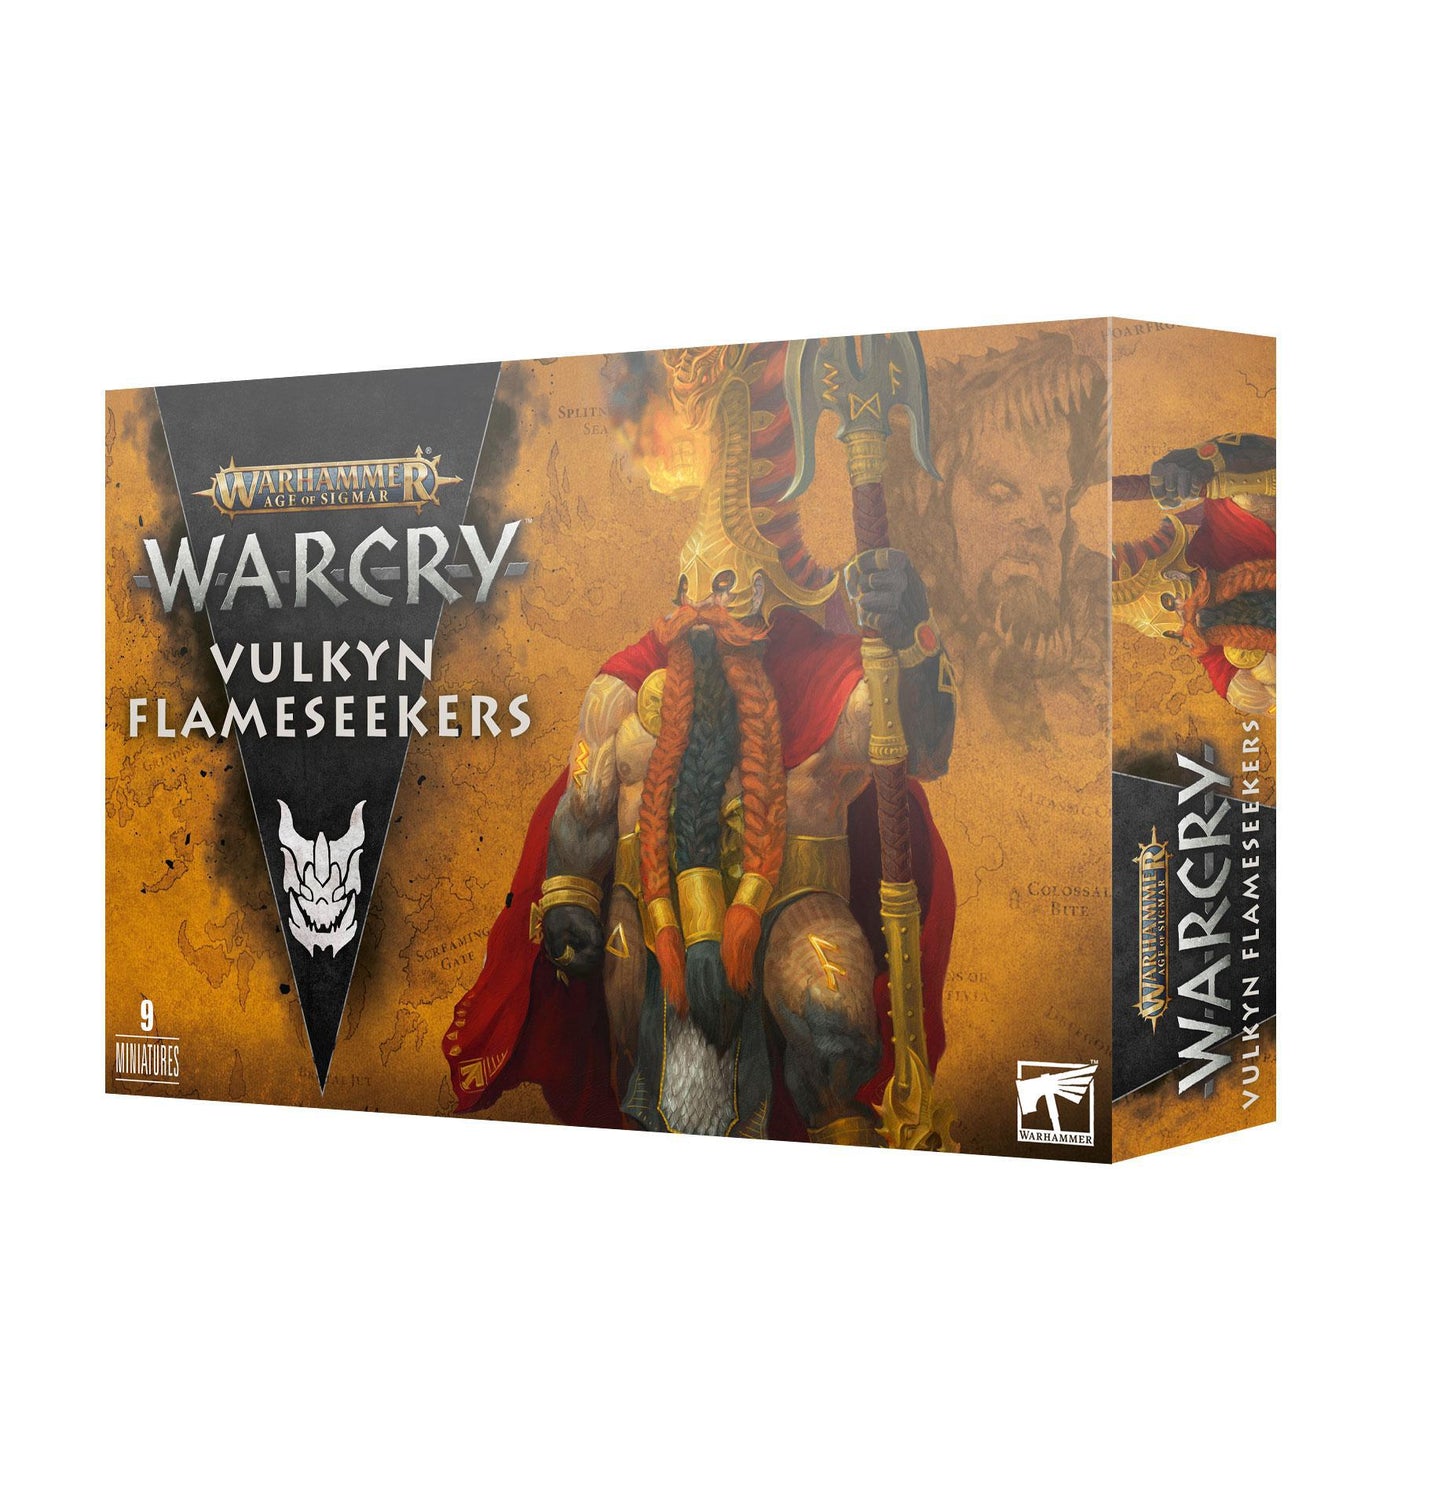 Warcry: Vulkan Flameseekers